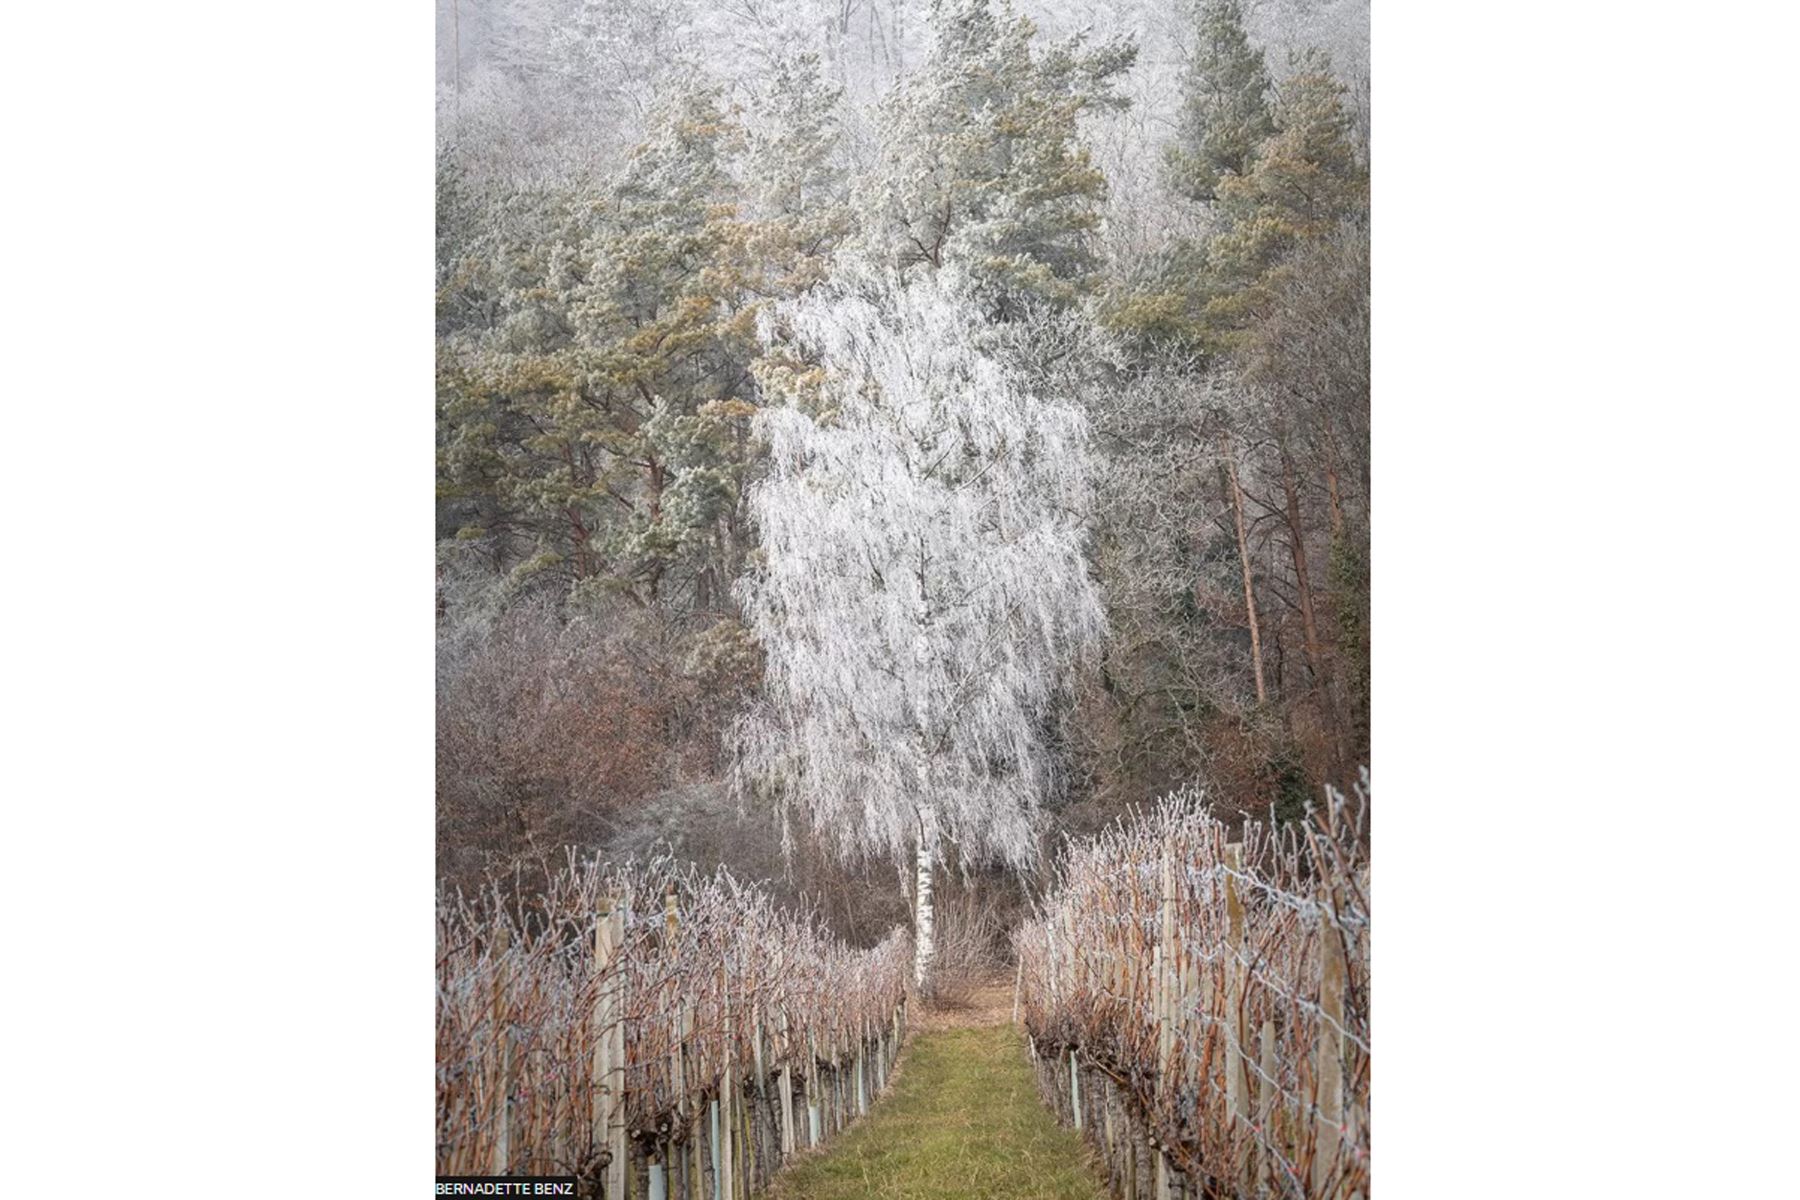 Bernadette Benz esperó un día con escarcha antes de tomar su foto llamada Frosted Silver Birch, que ganó la categoría Trees, Woods and Forests. Fue tomada en Auenstein, Aargau, Suiza.
Foto: Bernadette Benz